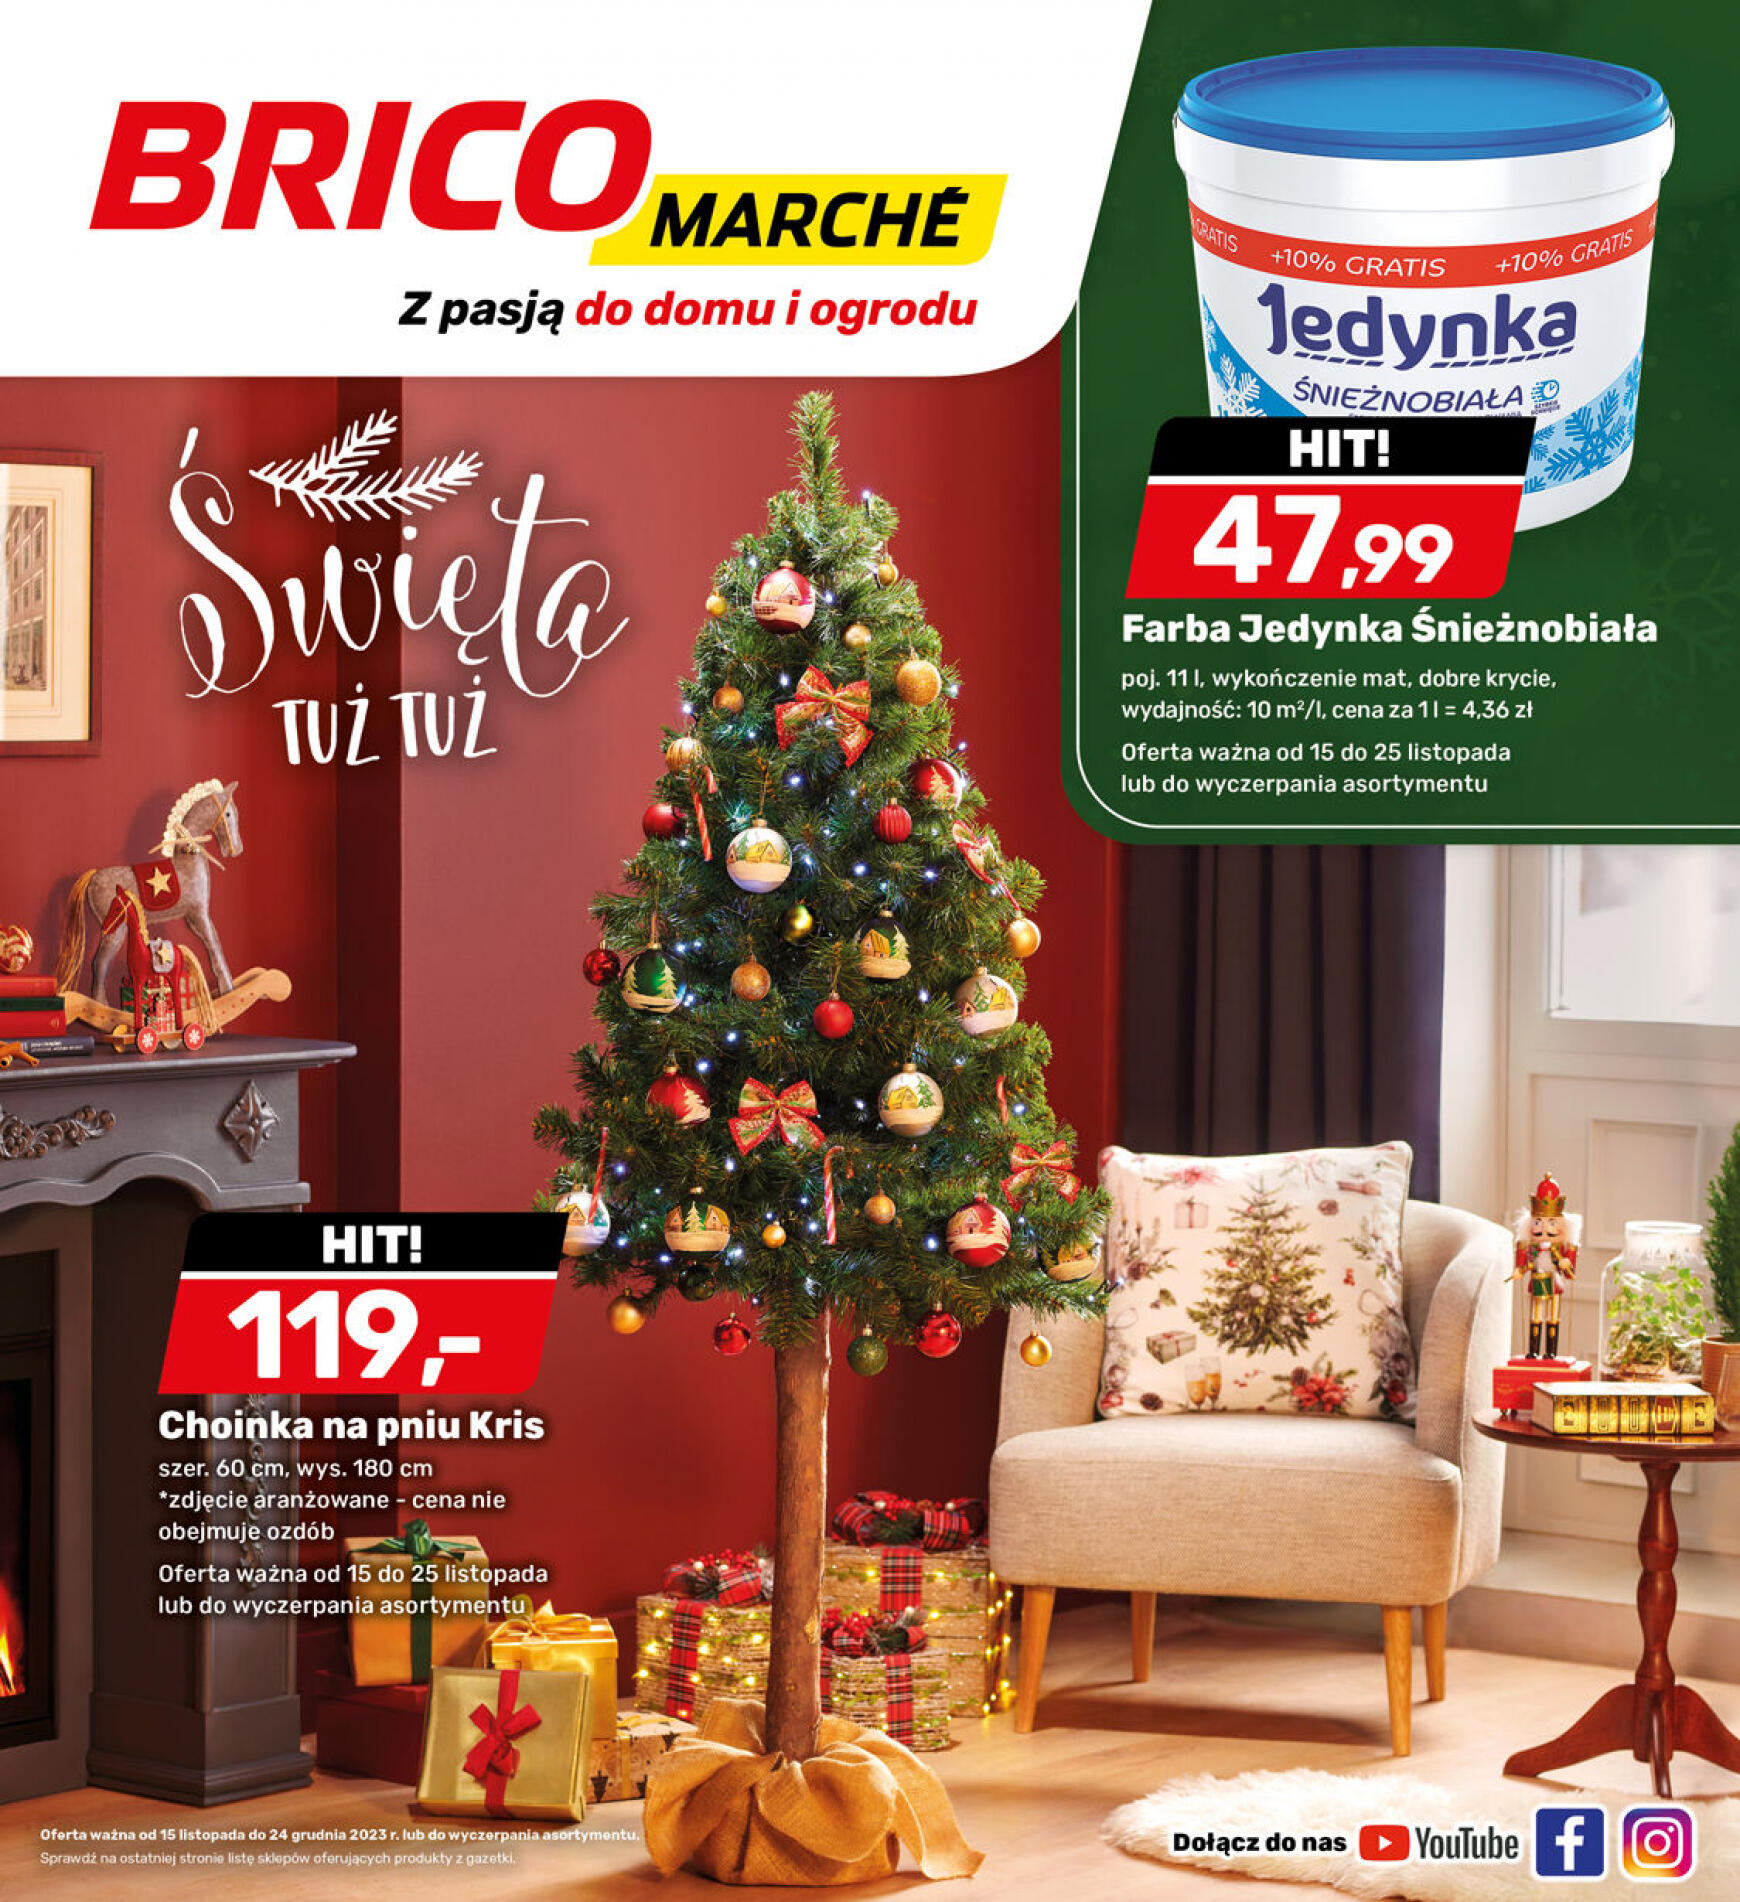 brico-marche - - Bricomarche - page: 23